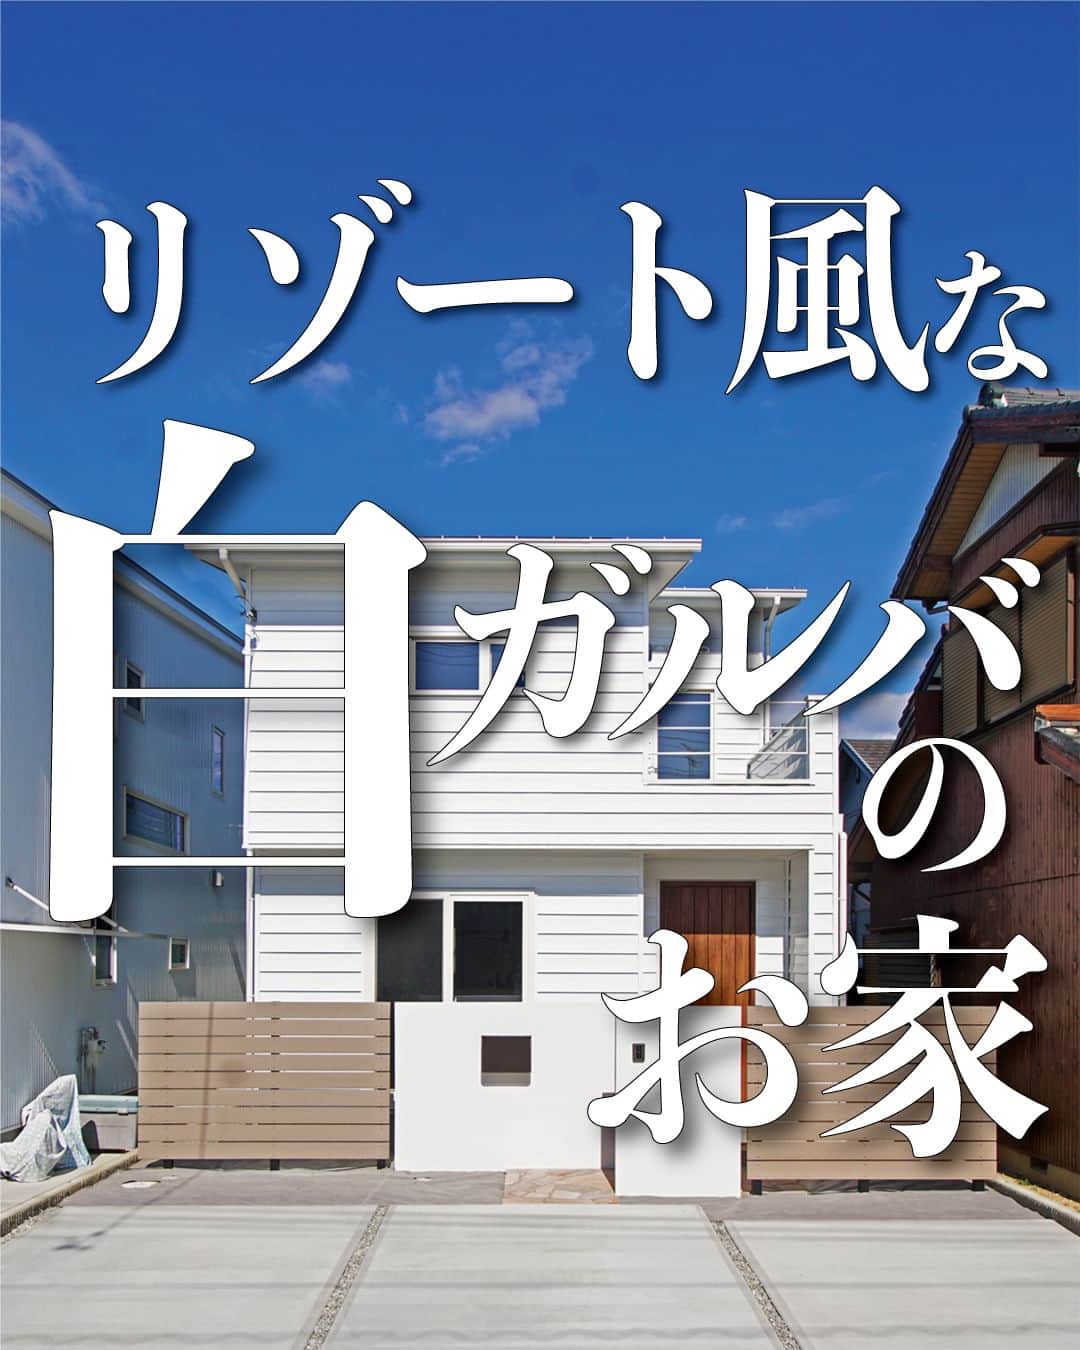 太陽住宅株式会社のインスタグラム：「太陽住宅の家 ▷▷▷ @taiyojutaku …………………………………………………………  本日は【リゾート風な白ガルバのお家】をご紹介します𓆸𓆸  当社でも人気のあるガルバリウムの外壁。 こちらのお家は白ガルバを採用しました。  横張りにすることでデザイン性があり、リゾート風でオシャレな外観になりました。真っ白な外壁が青空に映えますね♡  玄関の土間は、モルタルの”金(かな)コテ仕上げ”になっています。 シンプルでカッコイイ玄関に仕上がっていますね♥  ⳹【1日3組限定！】オープンハウス開催中！⳼ ◎豊橋市西高師町　 　コンセプトモデルハウス『希望の家』 　ぜひお気軽にお問合せください♪ ………………………………………………………… 残すもの・・・。 記録と、記憶と思い出と。 丈夫で長持ち、太陽住宅の家。 ………………………………………………………… ⁡ HPでもたくさんの #施工事例 を掲載しております😌✨  太陽住宅の家 詳しくはコチラから ▷▷▷ @taiyojutaku  気になることがあれば、いつでもコメント・DM📩お待ちしております🙋  ──────────────────────── 太陽住宅株式会社 愛知県豊橋市三本木町字元三本木18-5 0120-946-265 ────────────────────────  #白ガルバ #白ガルバの家 #白ガルバ外壁 #ガルバリウムの家 #外壁ガルバ #外観おしゃれ #外観写真 #外観が素敵 #金鏝仕上 #金コテ #太陽住宅 #豊川土地 #豊橋土地 #豊橋注文住宅 #豊川注文住宅 #工務店がつくる家 #注文住宅のかっこいい工務店 #豊橋家づくり #豊川家づくり #マイホーム計画 #土地探しからの注文住宅 #土地探しから #建売に見えない建売 #自由設計 #太陽の家 #豊橋建売 #豊川建売 #希望の家 #オープンハウス開催中」